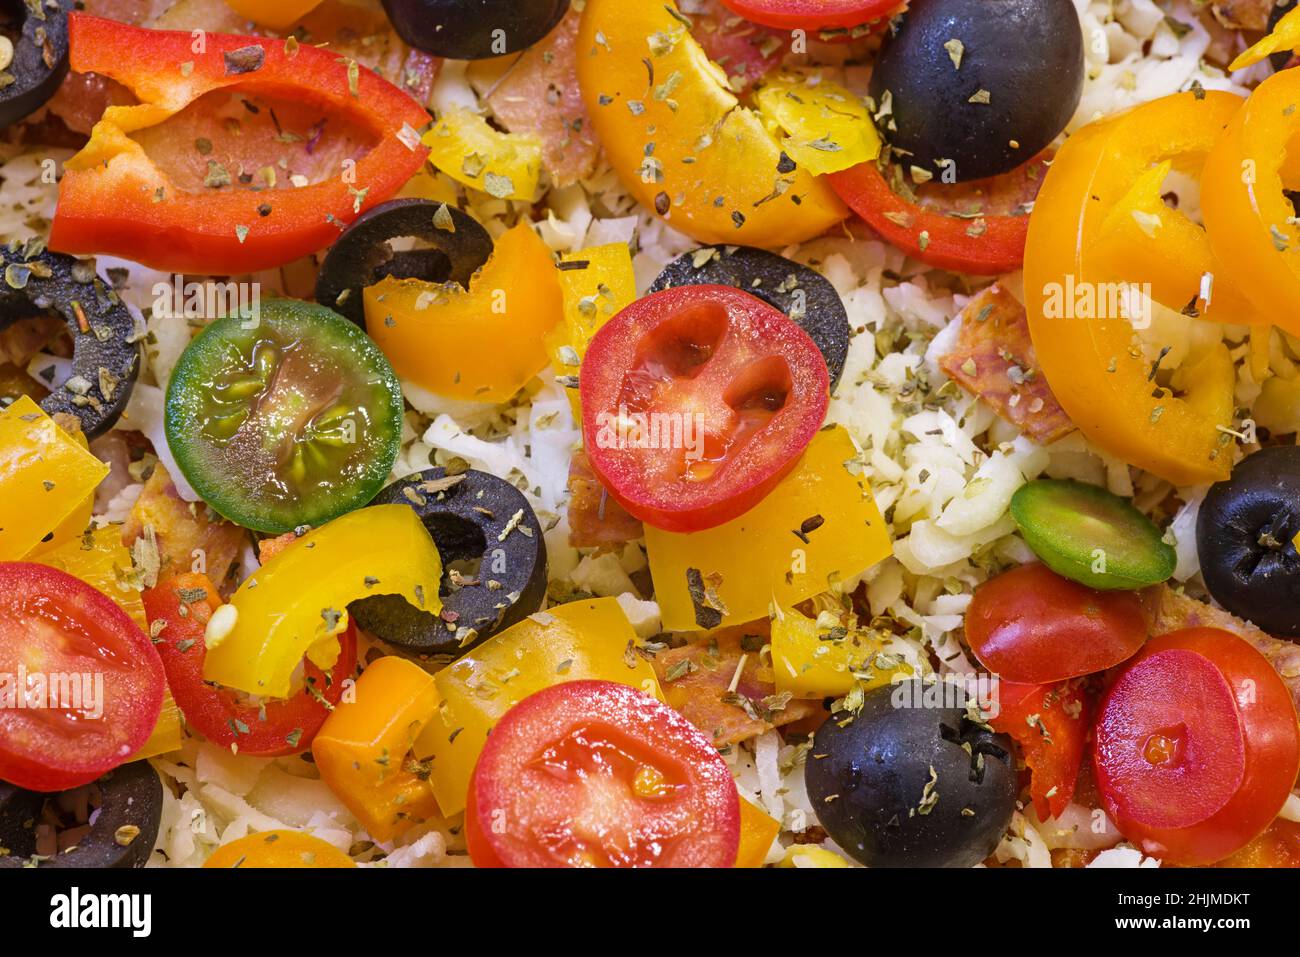 dettaglio di una pizza fatta in casa non cotta con peperoni, olive al pomodoro, formaggio ed erbe pronte per la cottura Foto Stock